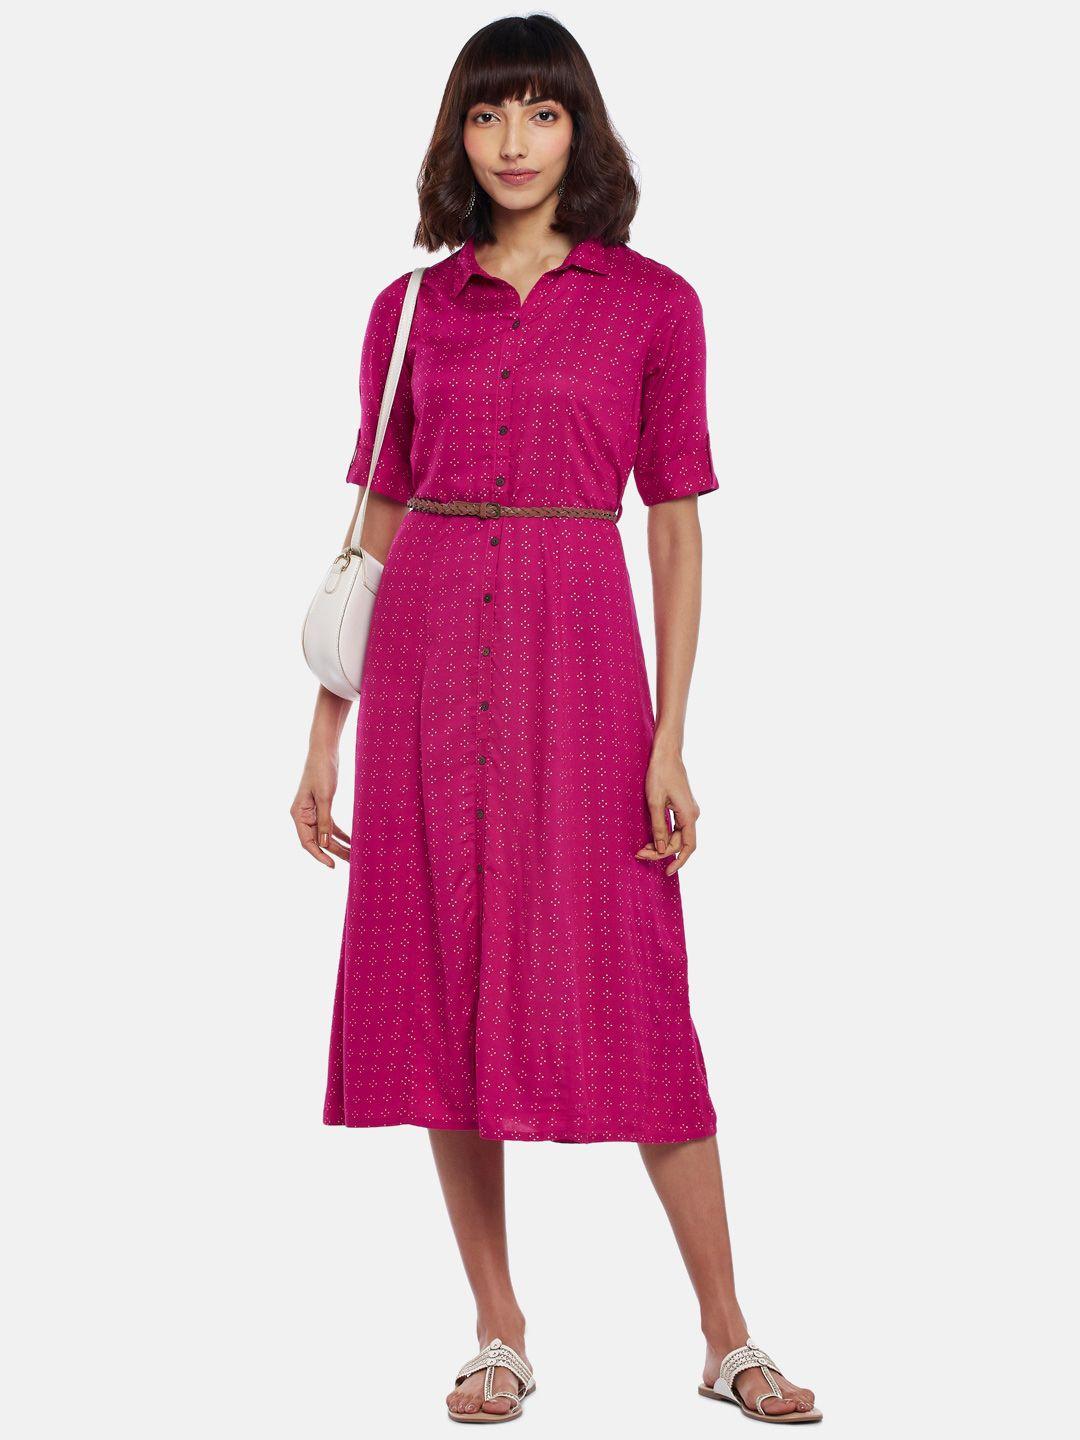 akkriti by pantaloons fuchsia pink shirt midi dress